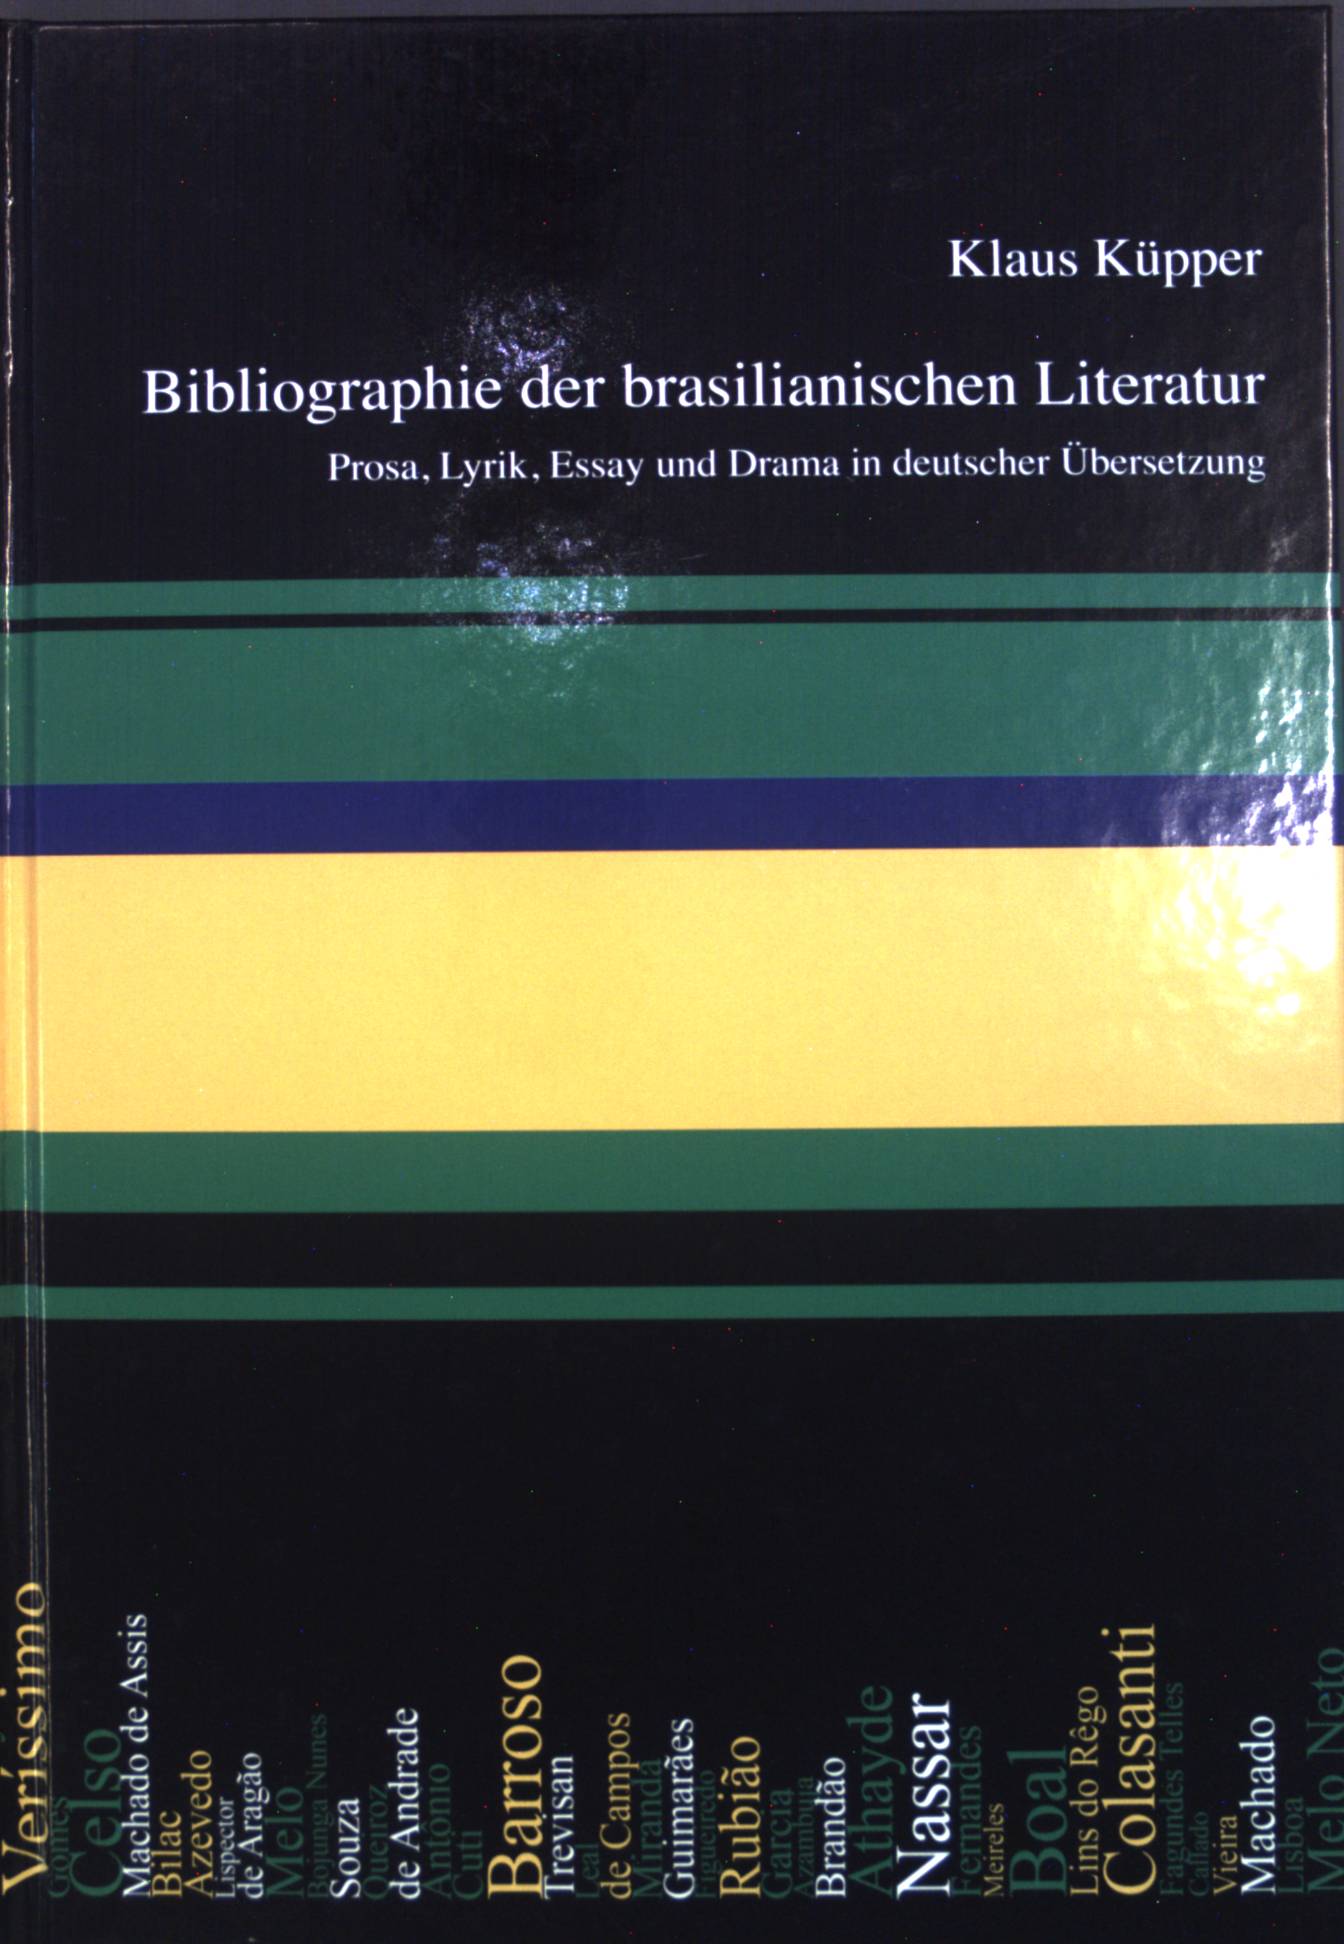 Bibliographie der brasilianischen Literatur : Prosa, Lyrik, Essay und Drama in deutscher Übersetzung. - Küpper, Klaus und Berthohold Zilly